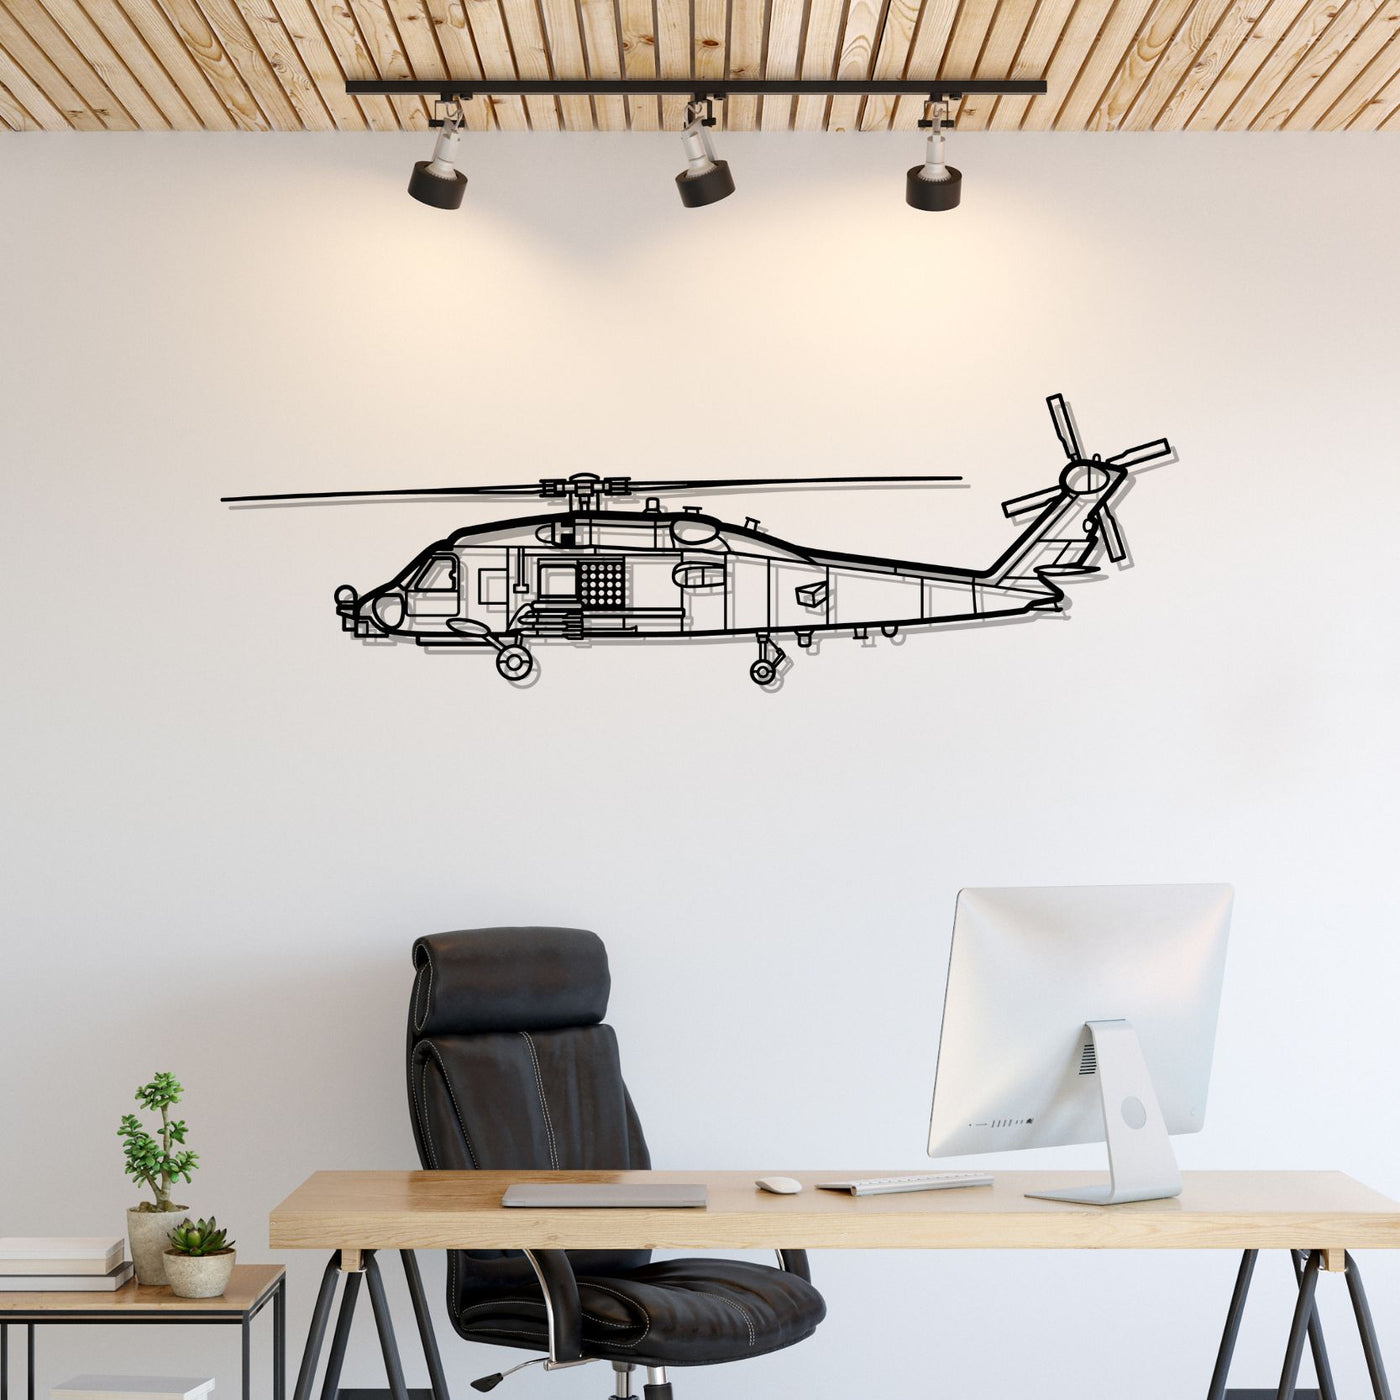 MH-60 Romeo Silhouette Metal Wall Art